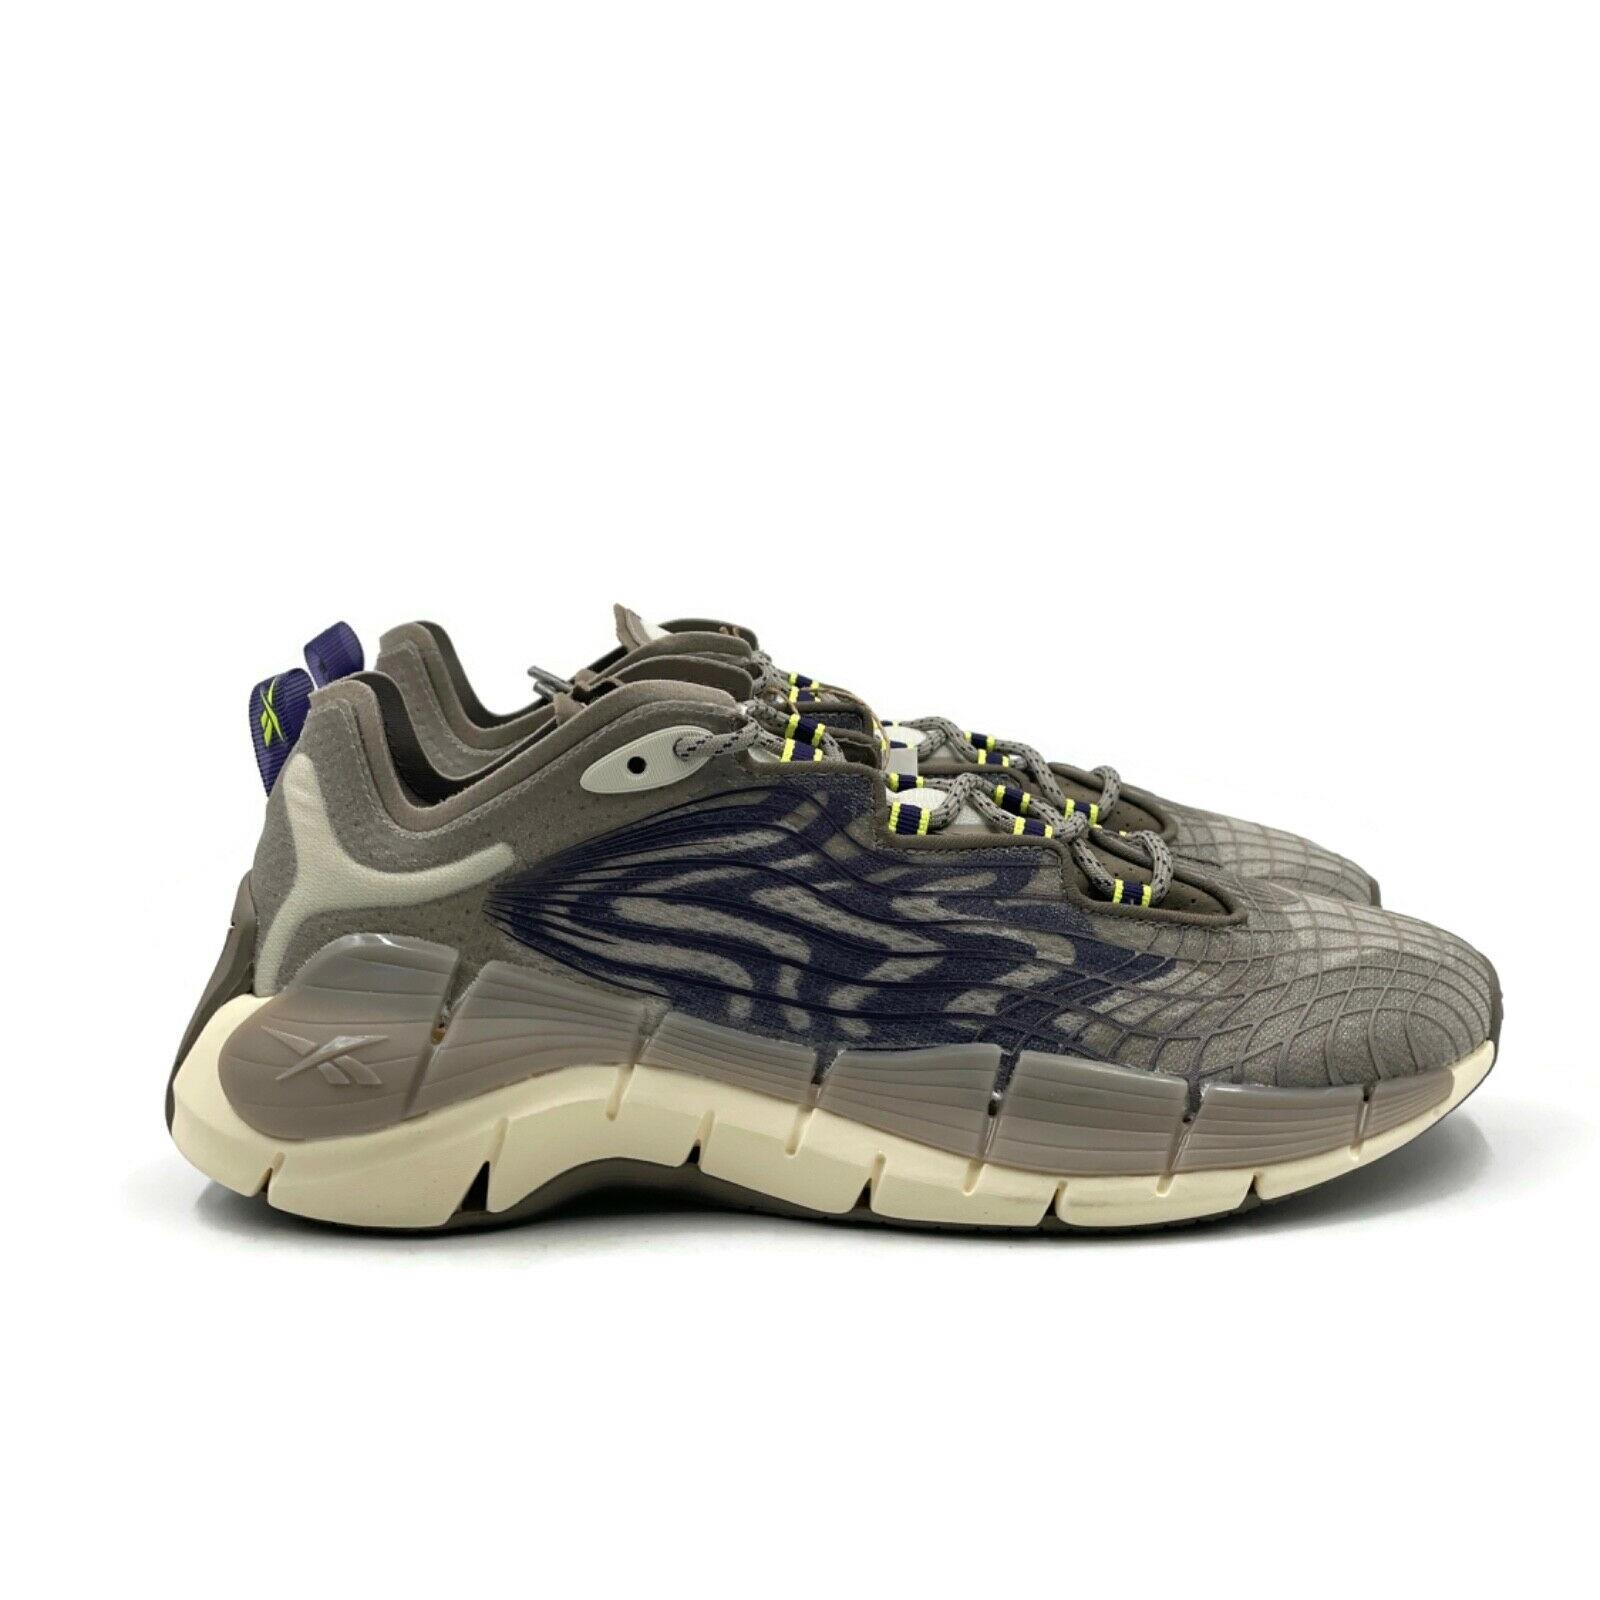 Reebok Zig Kinetica II 2 Mens Size 9.5 Casual Running Shoe Gray Trainer Sneaker